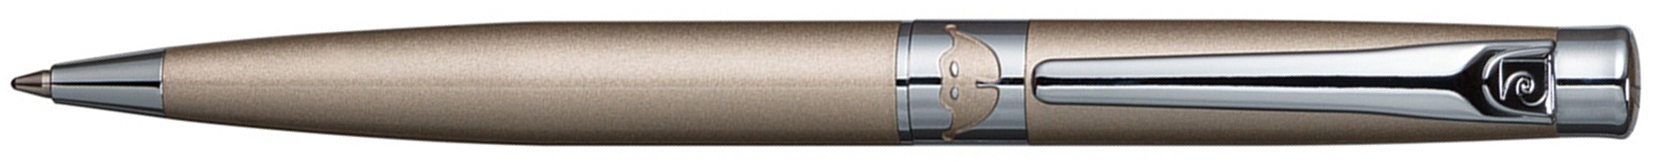 Ручка шариковая Pierre Cardin VENEZIA. Цвет - бежевый. Упаковка B., бежевый, латунь, нержавеющая сталь